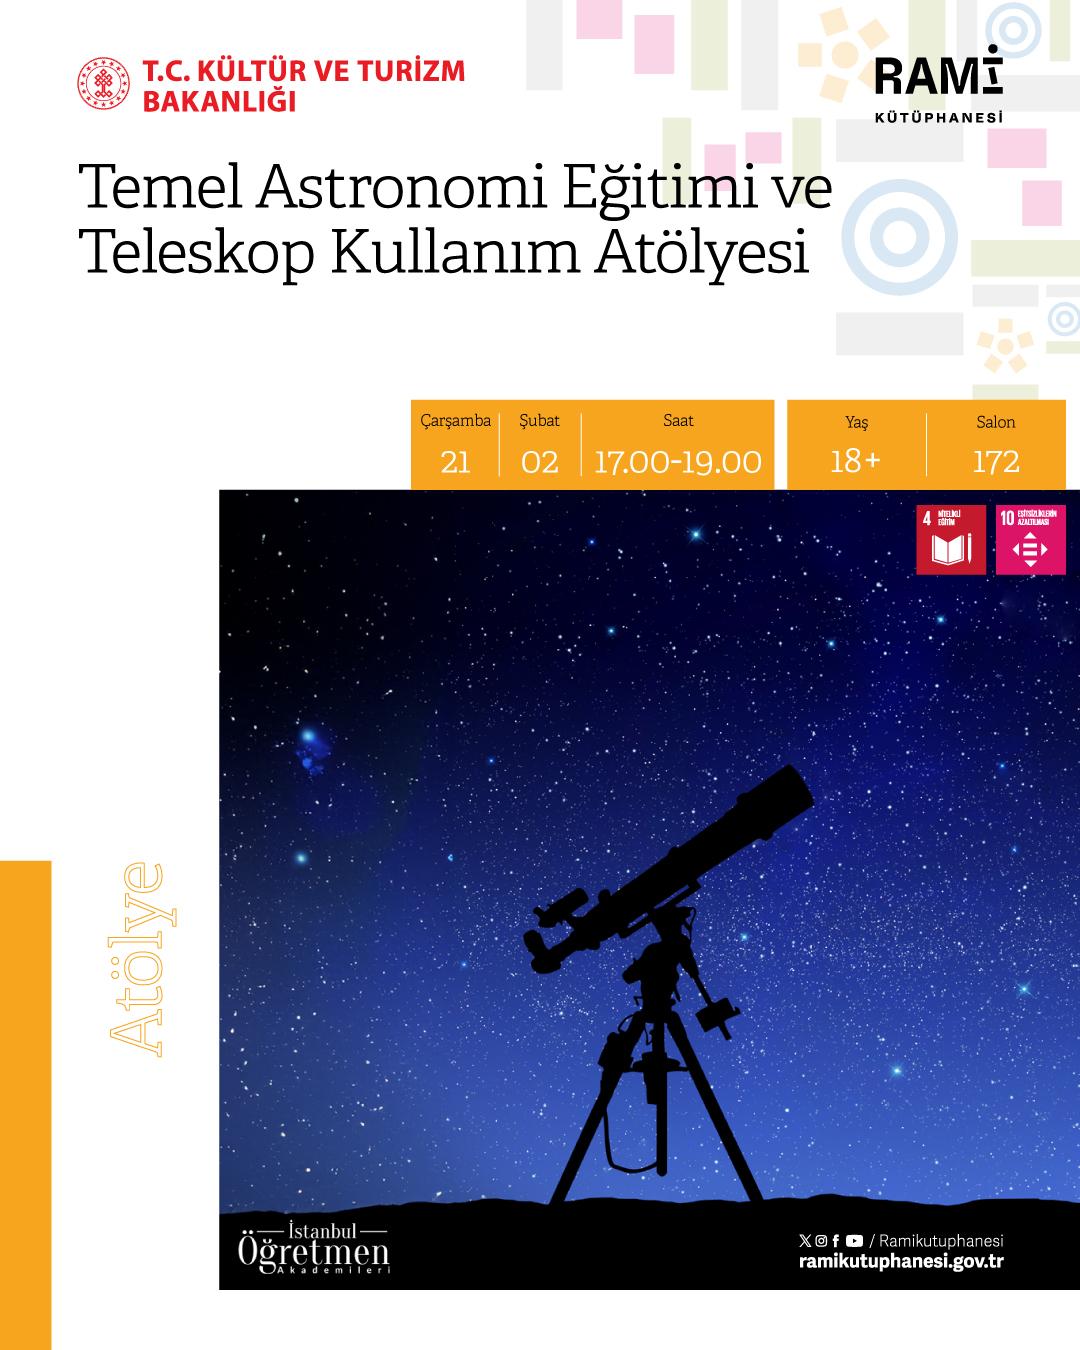 Temel Astronomi Eğitimi ve Teleskop Kullanım Atölyesi